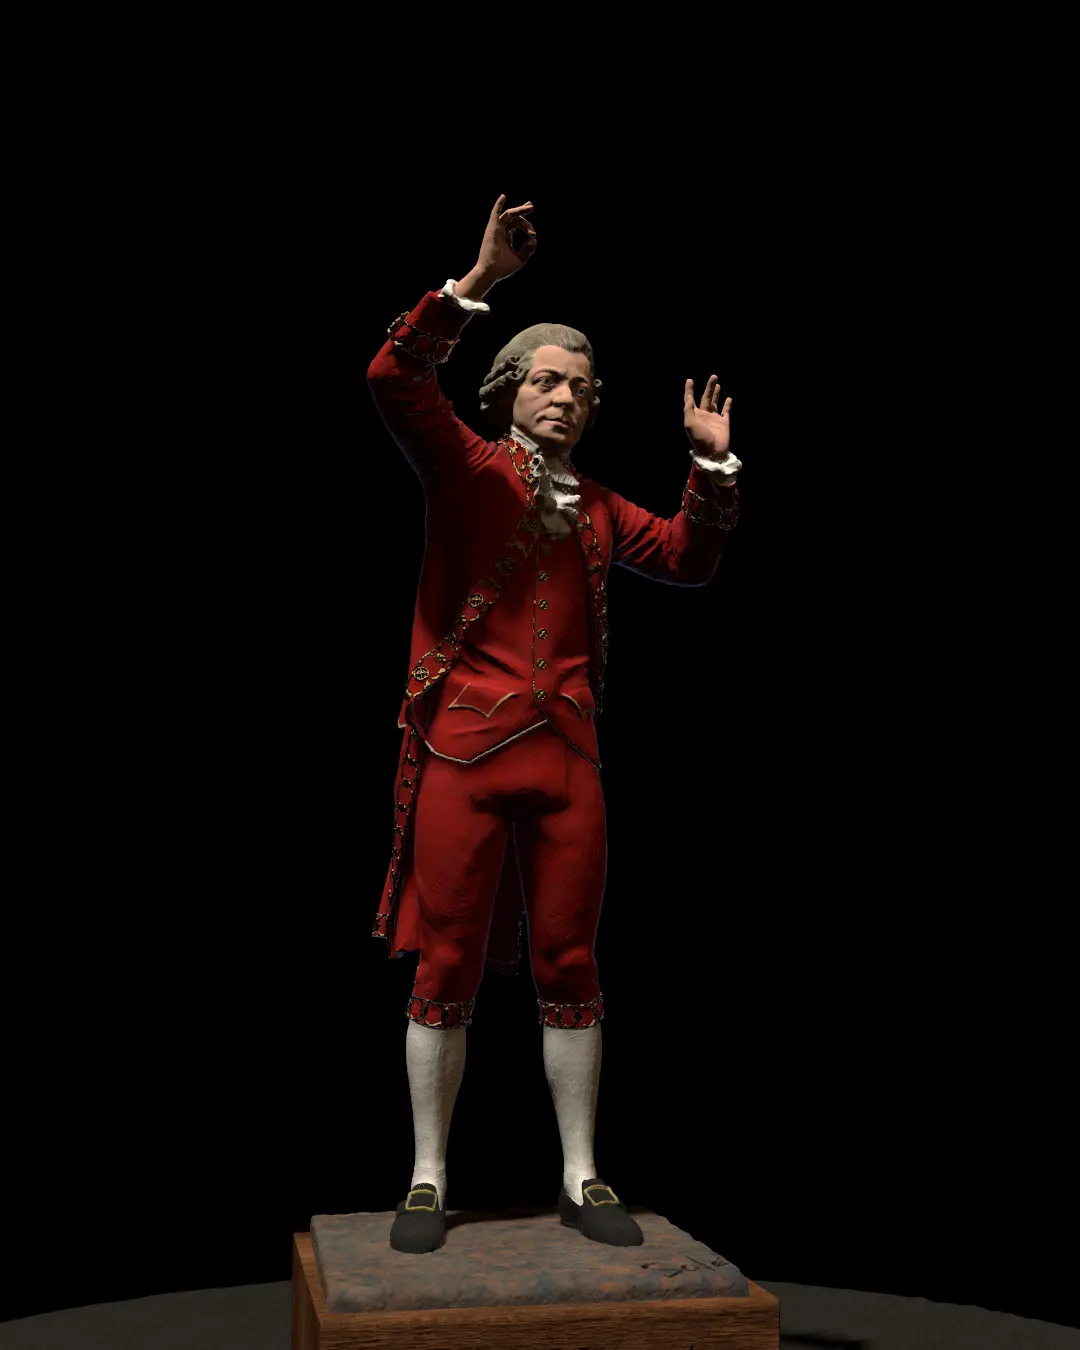 Wolfgang-Amadeus-Mozart-statue/Rendering-of-Wolfgang-Amadeus-Mozart-statue-modeled-by-Emil-Sole-1.webp